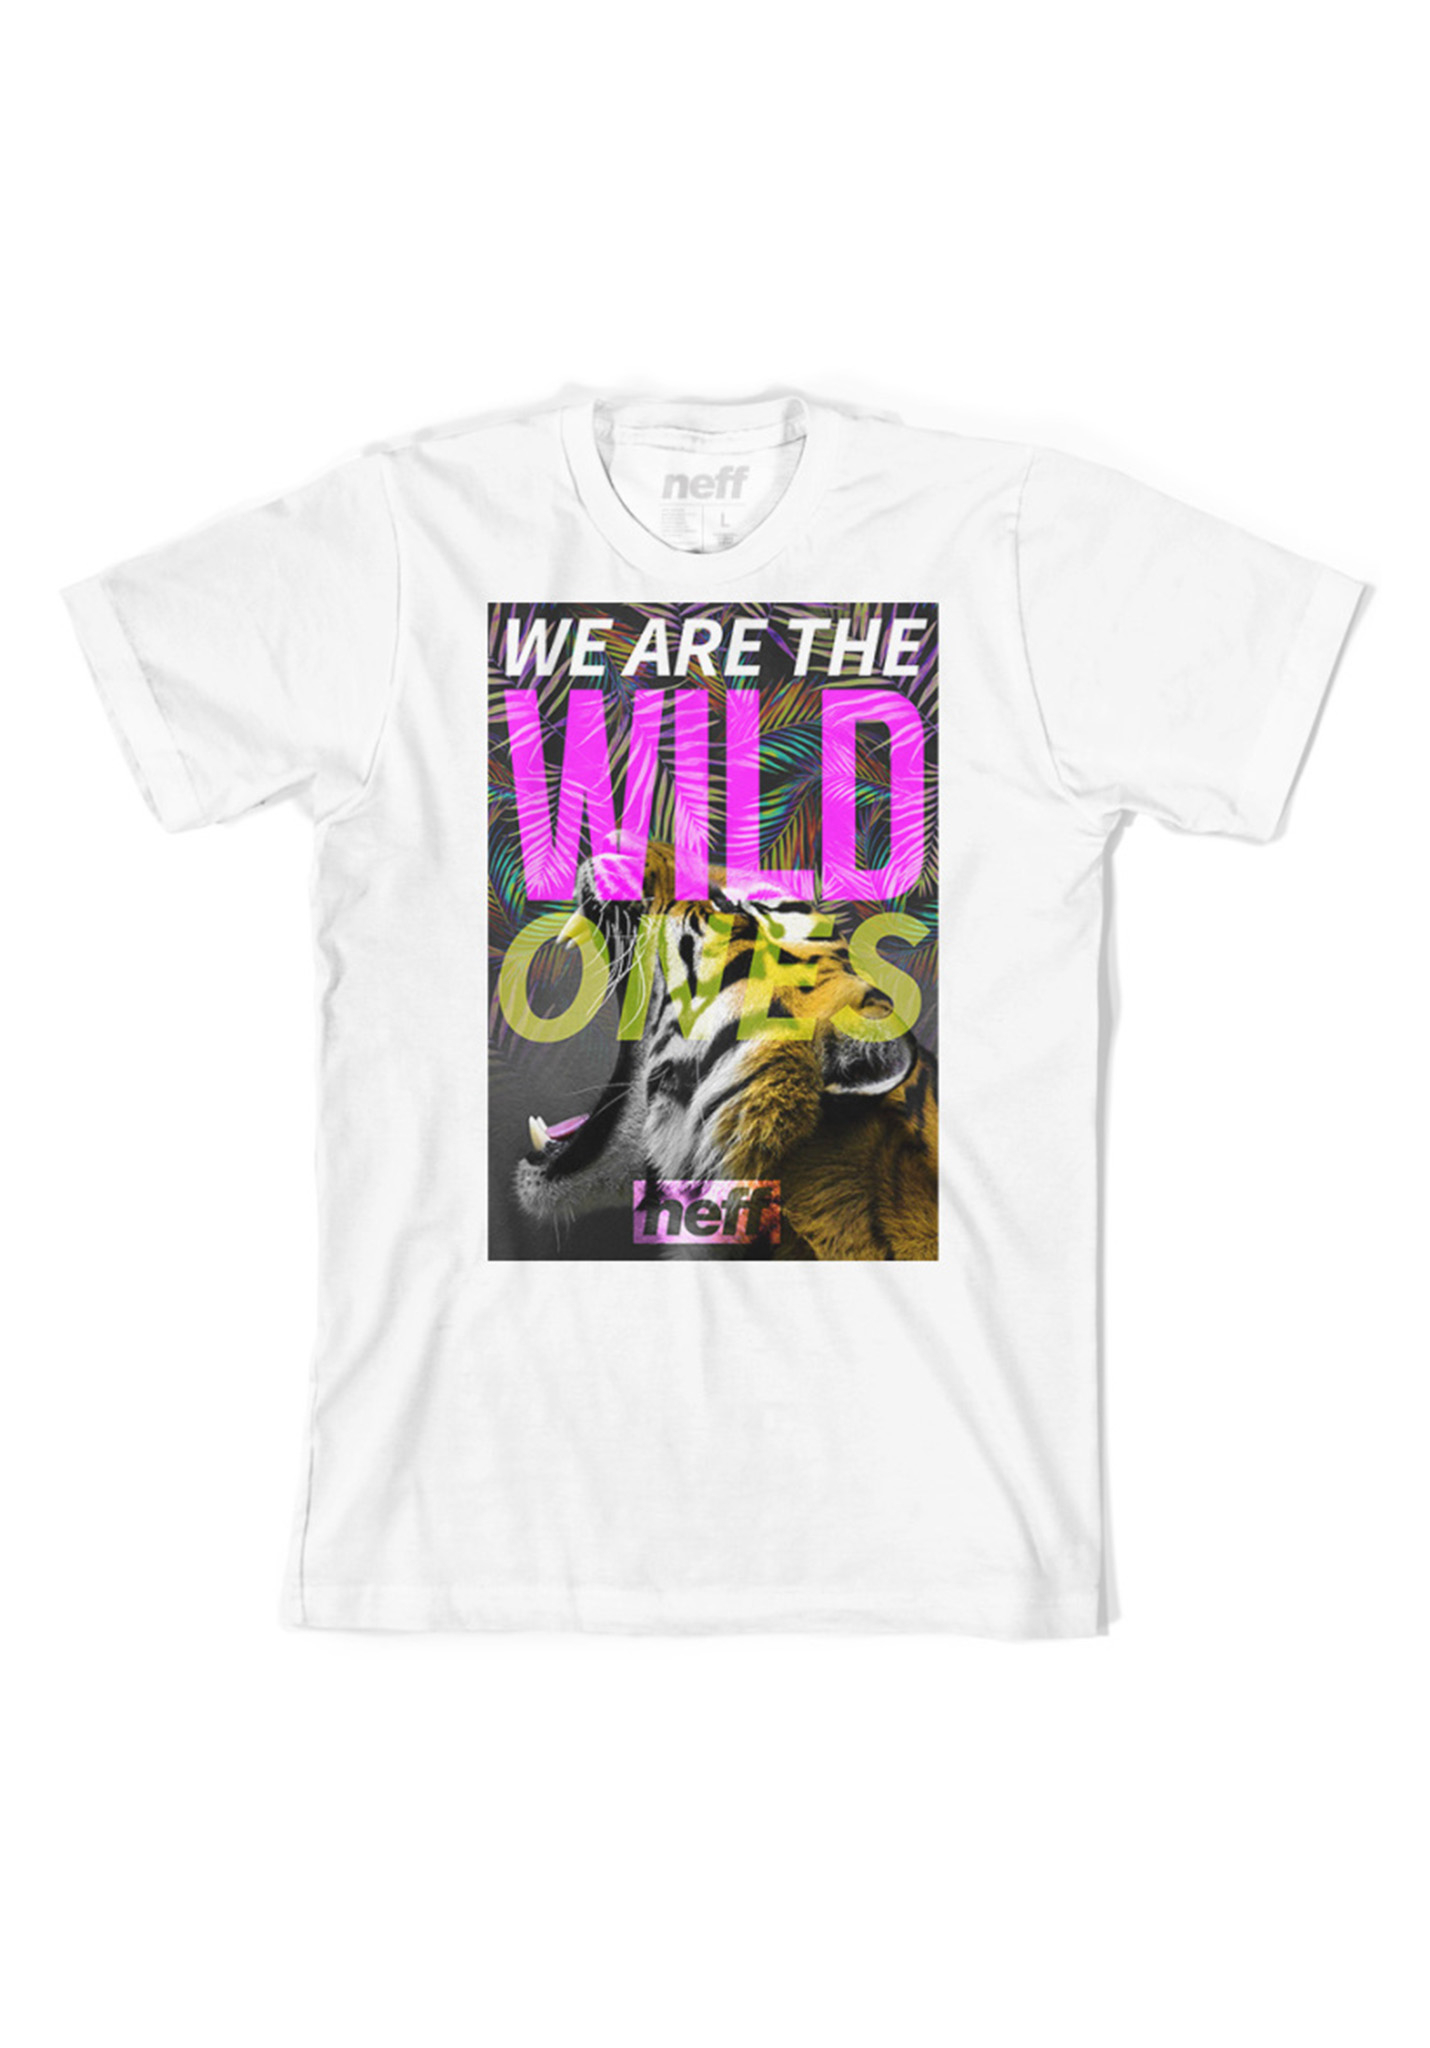 Neff Wild Ones T-Shirt weiß S